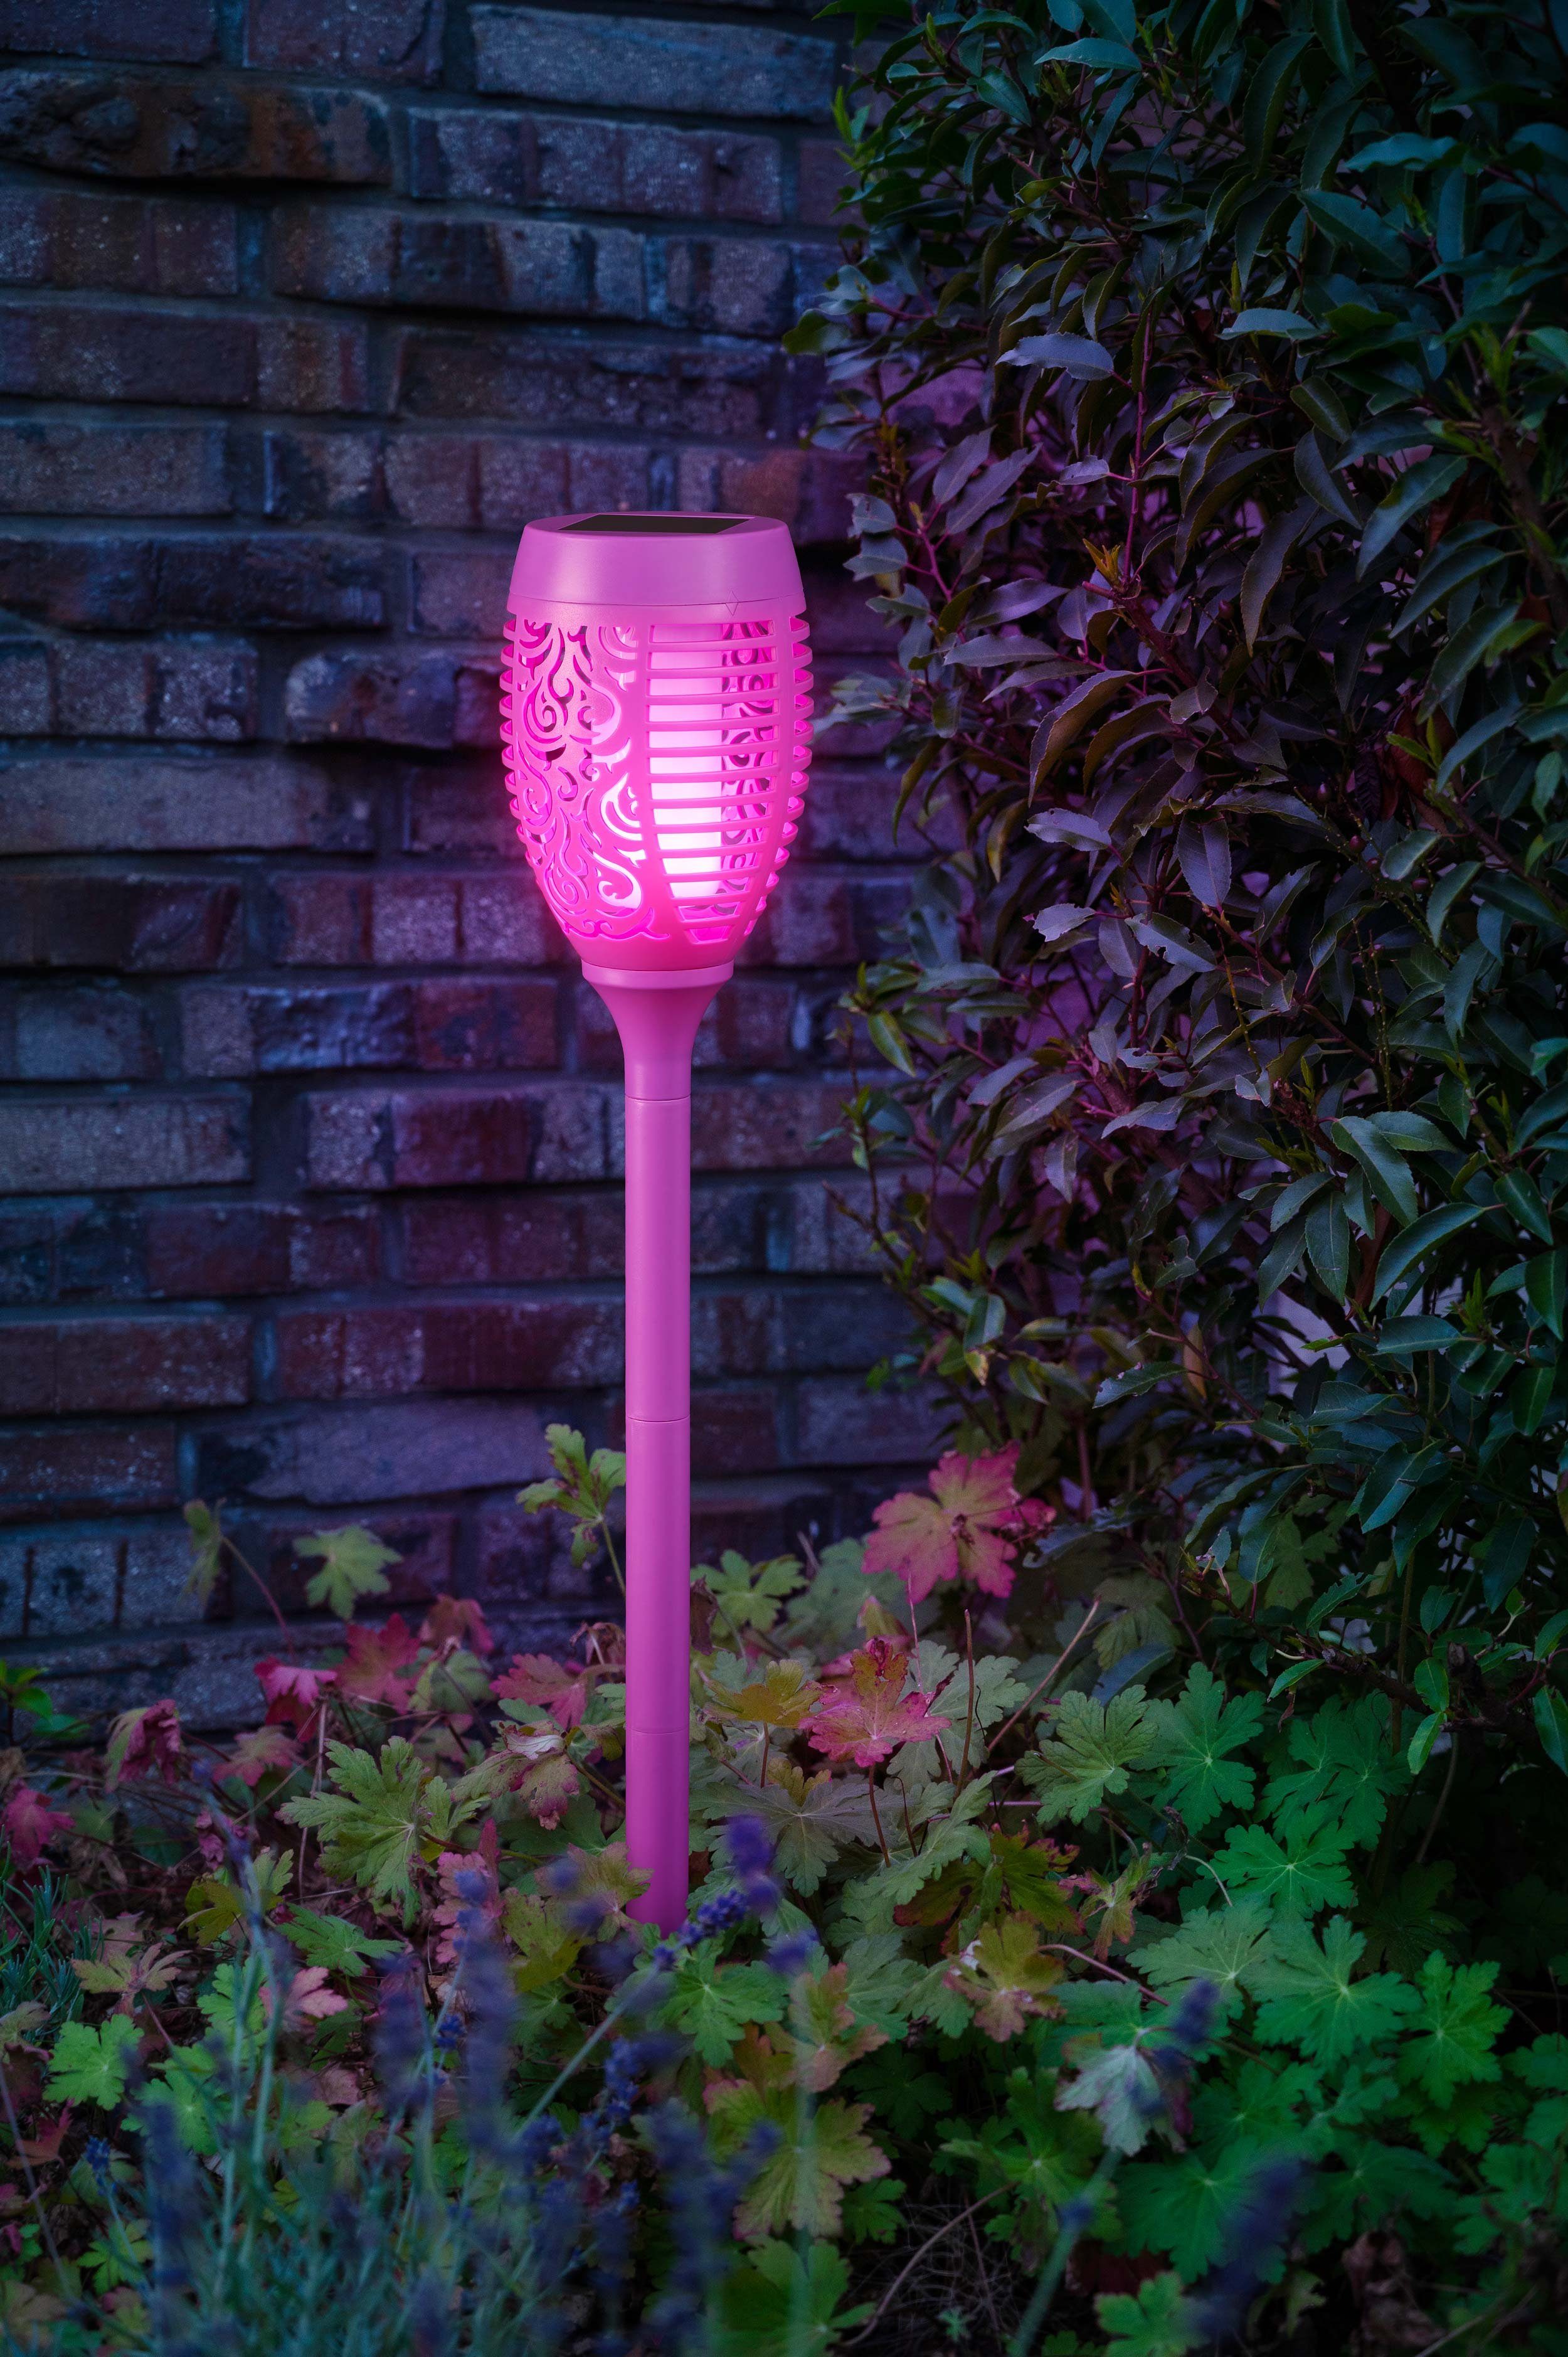 kamelshopping LED Gartenfackel Solarleuchten für Außen, bunte Gartenfackel mit Flammeneffekt, LED fest integriert, bunt, wasserdicht, Dämmerungssensor, ca. 72 cm hoch, bunt lila